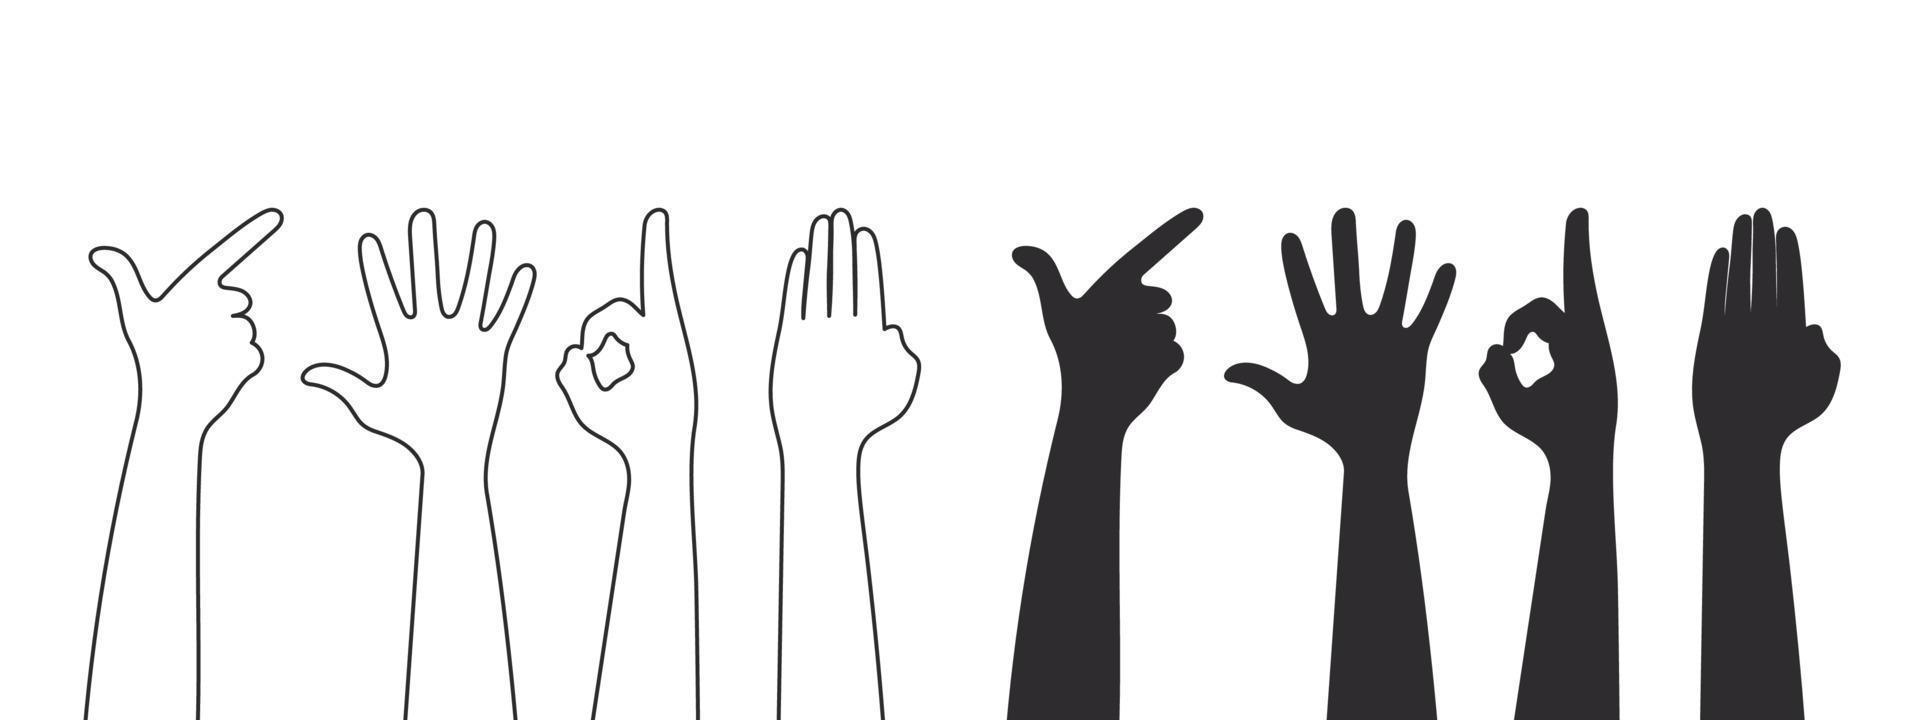 Handgesten-Silhouetten. Teamwork-Hände, Zusammenarbeit, Abstimmungshände. Vektor-Illustration vektor